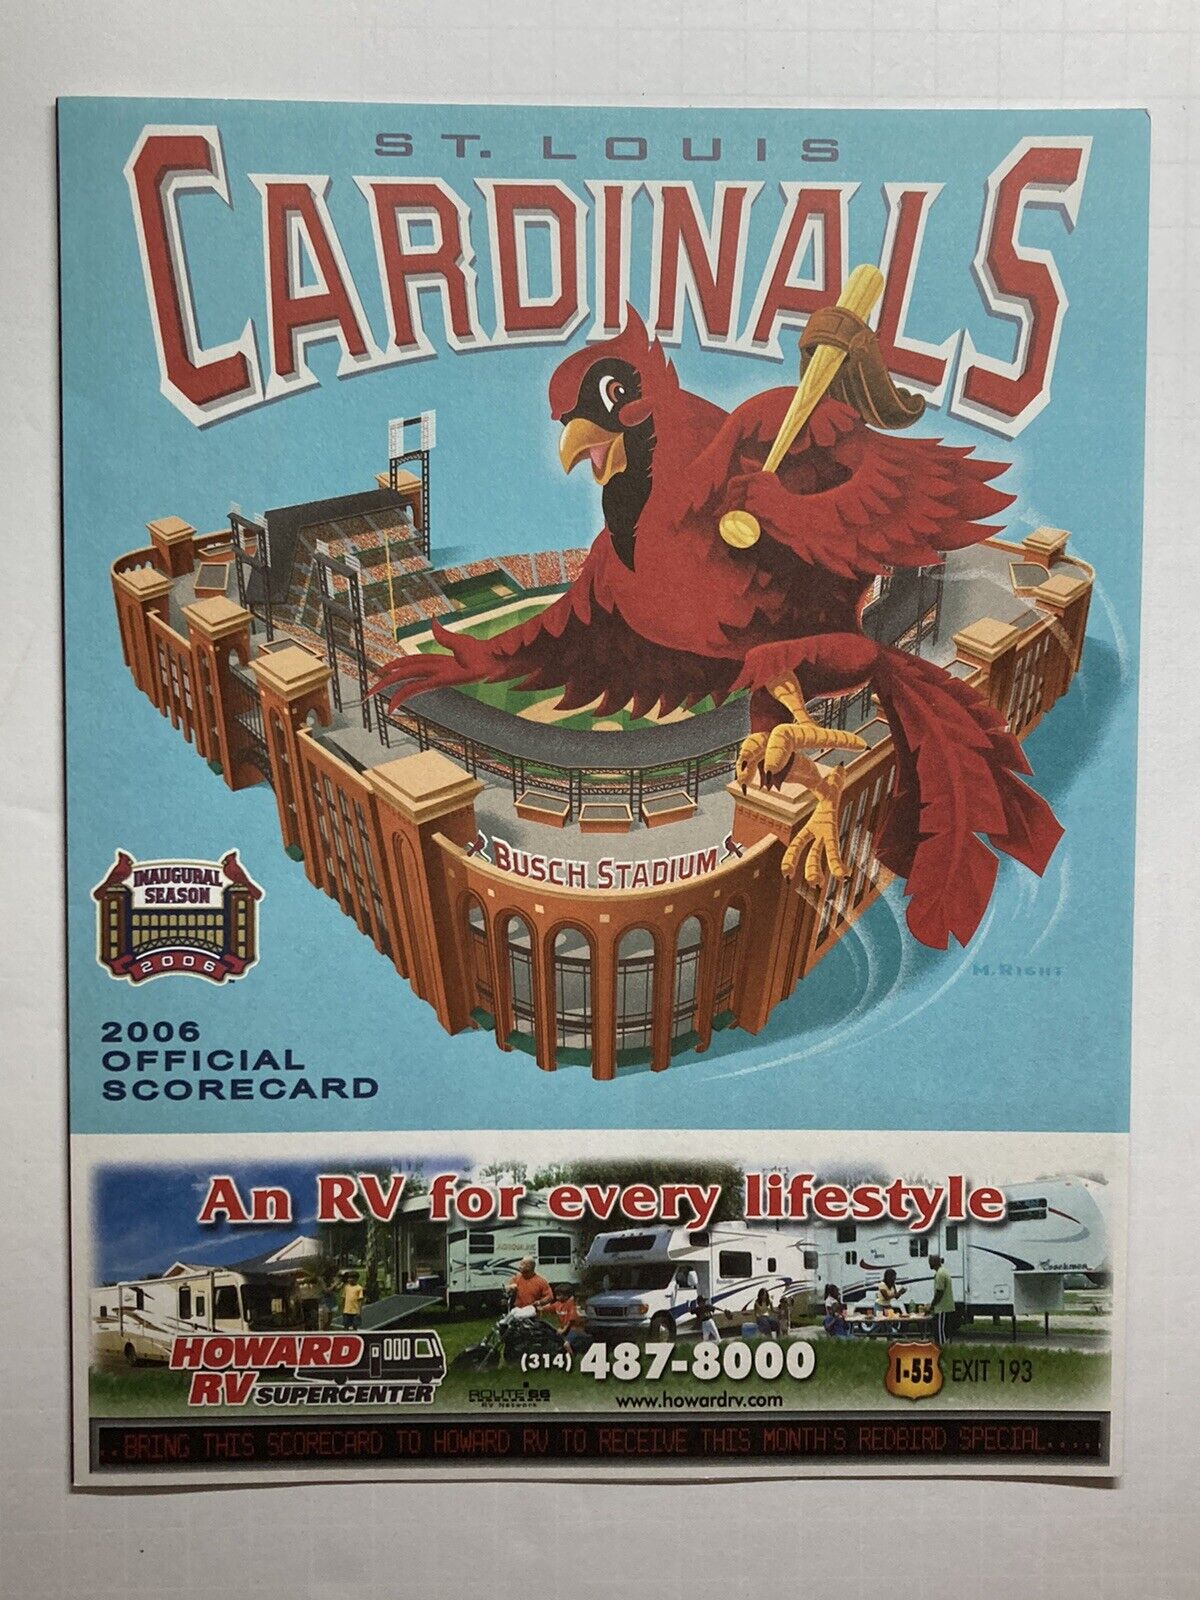 Unmarked 2006 St. Louis Cardinals Scorecard - Inaugural Season New Busch Stadium